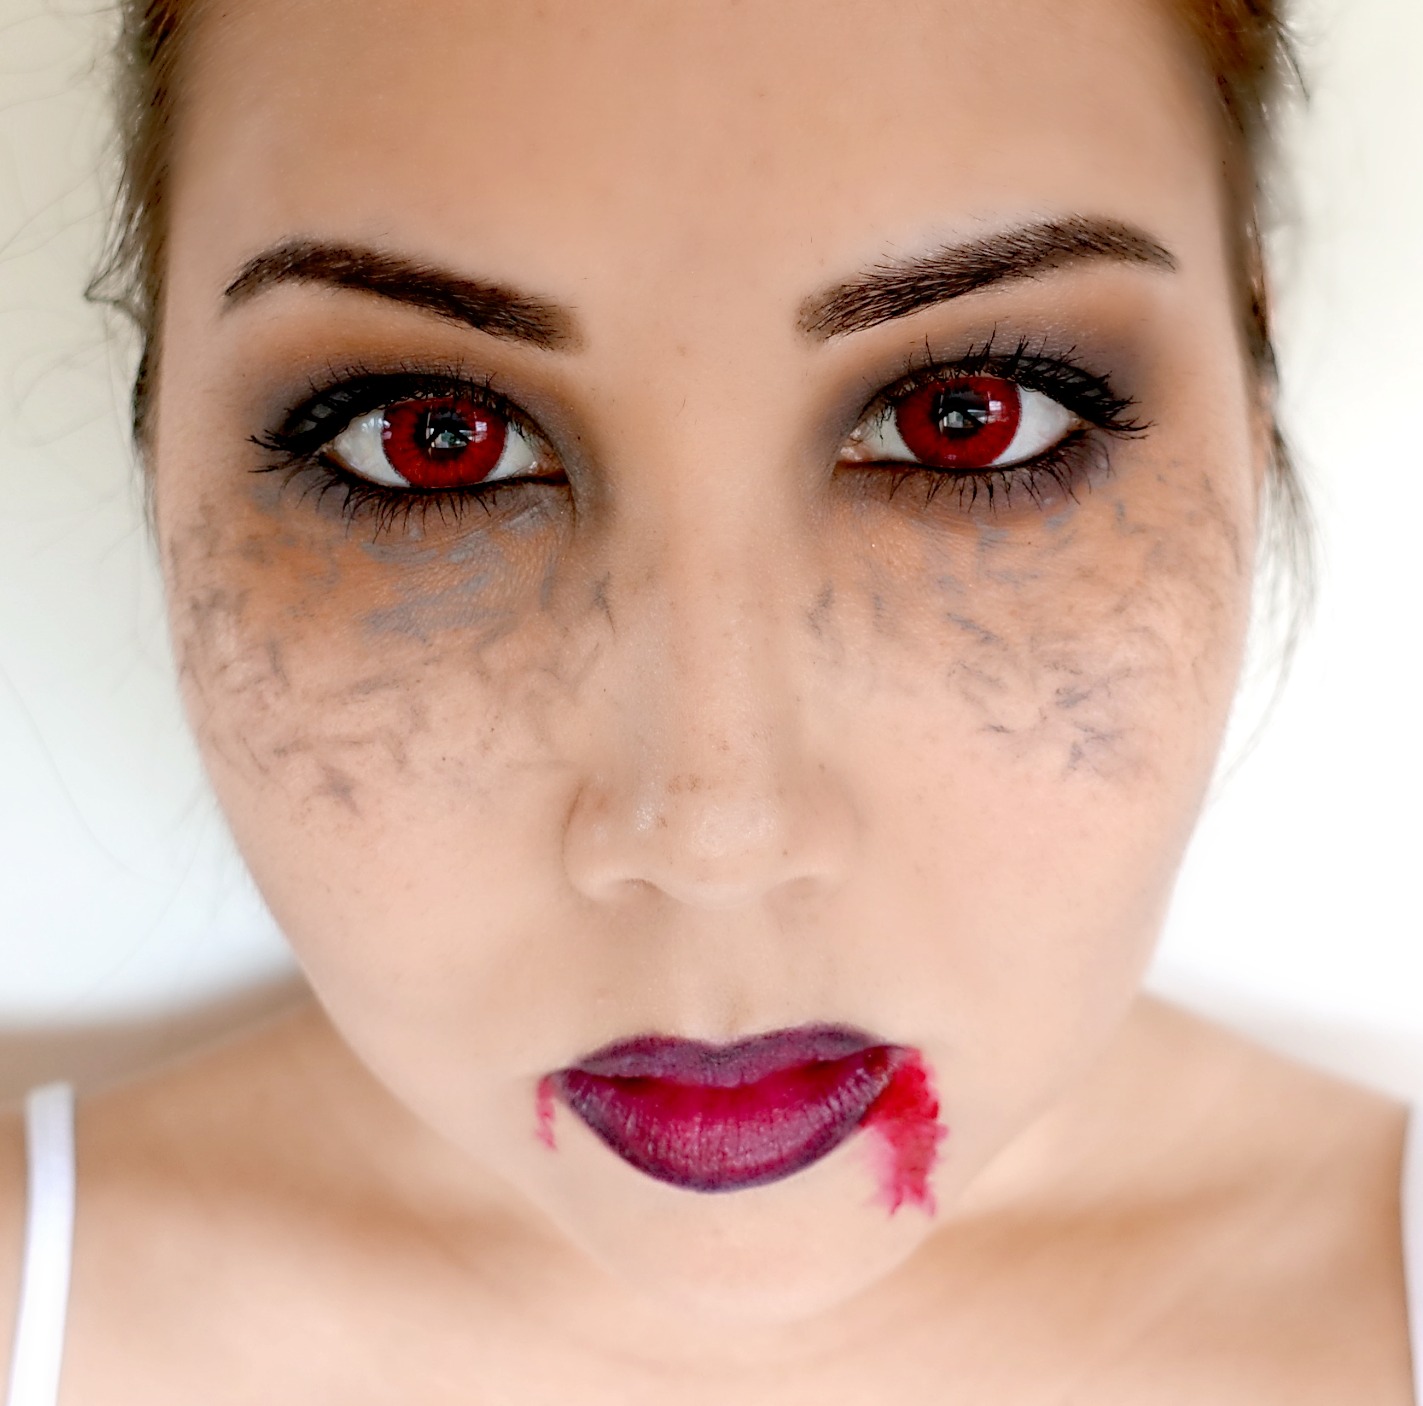 Easy Halloween Vampire Makeup Look Using Only 